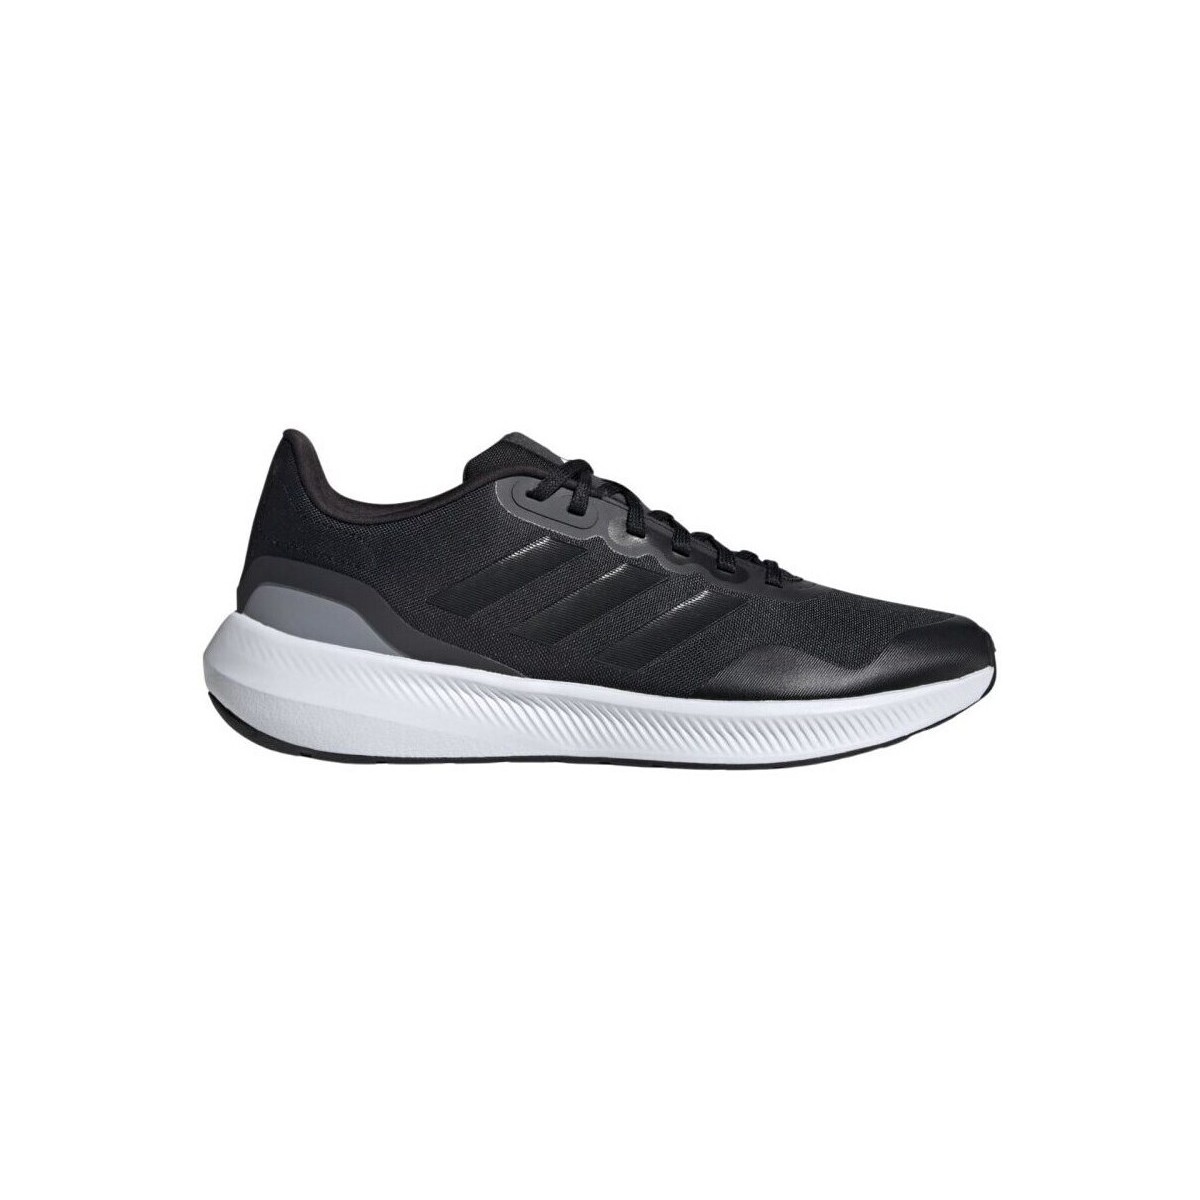 Adidas Runfalcon 3.0 Black